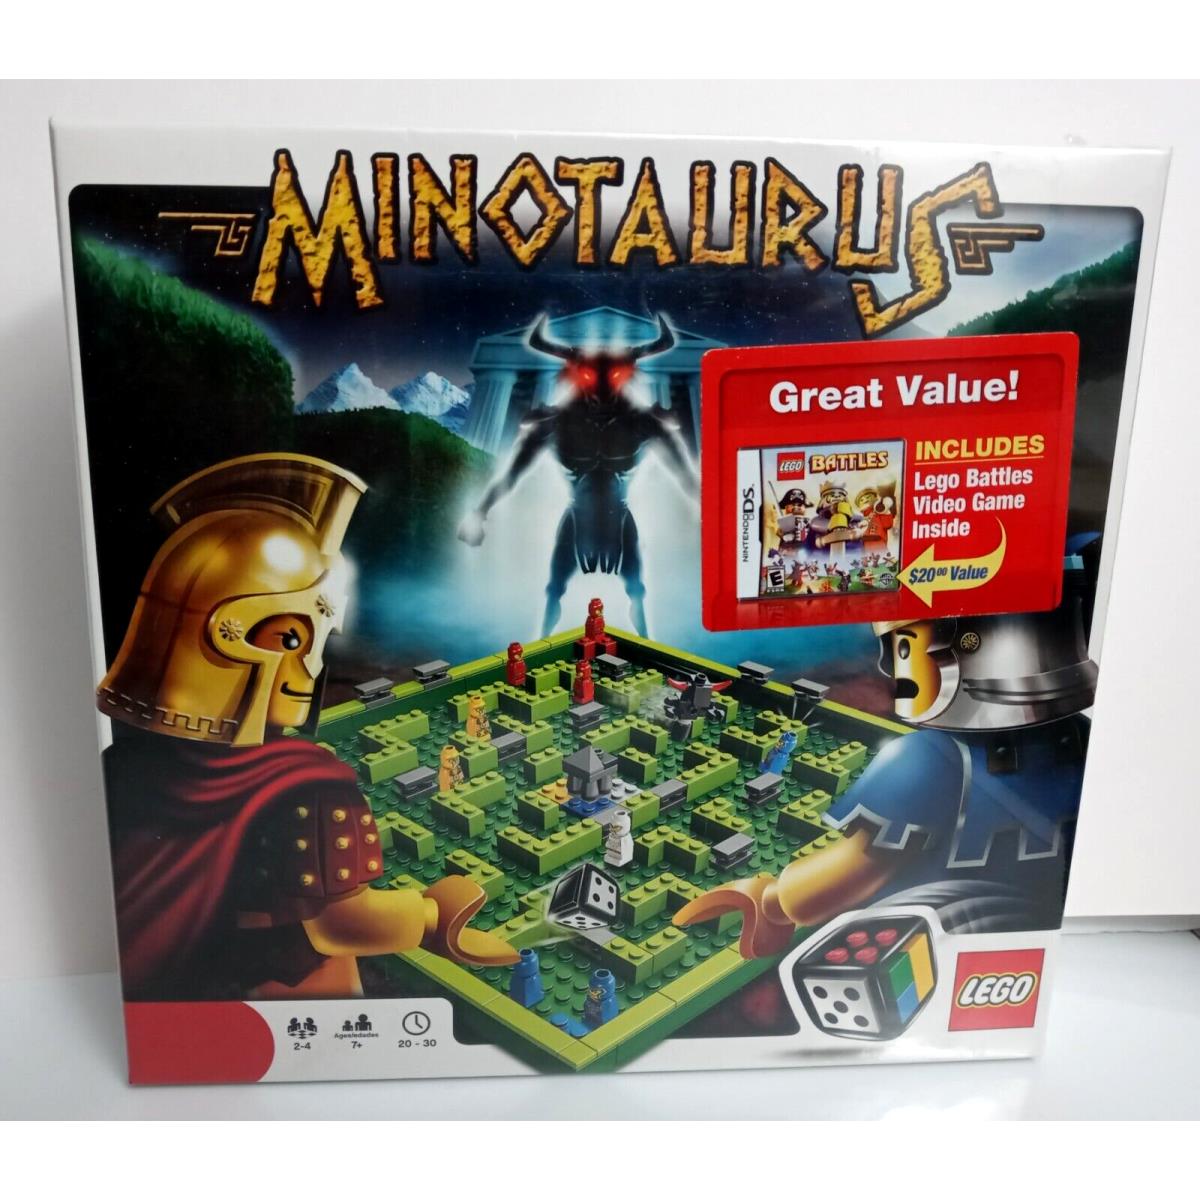 Lego Games: Minotaurus 3841 Includes Lego Battles Video Game Rare